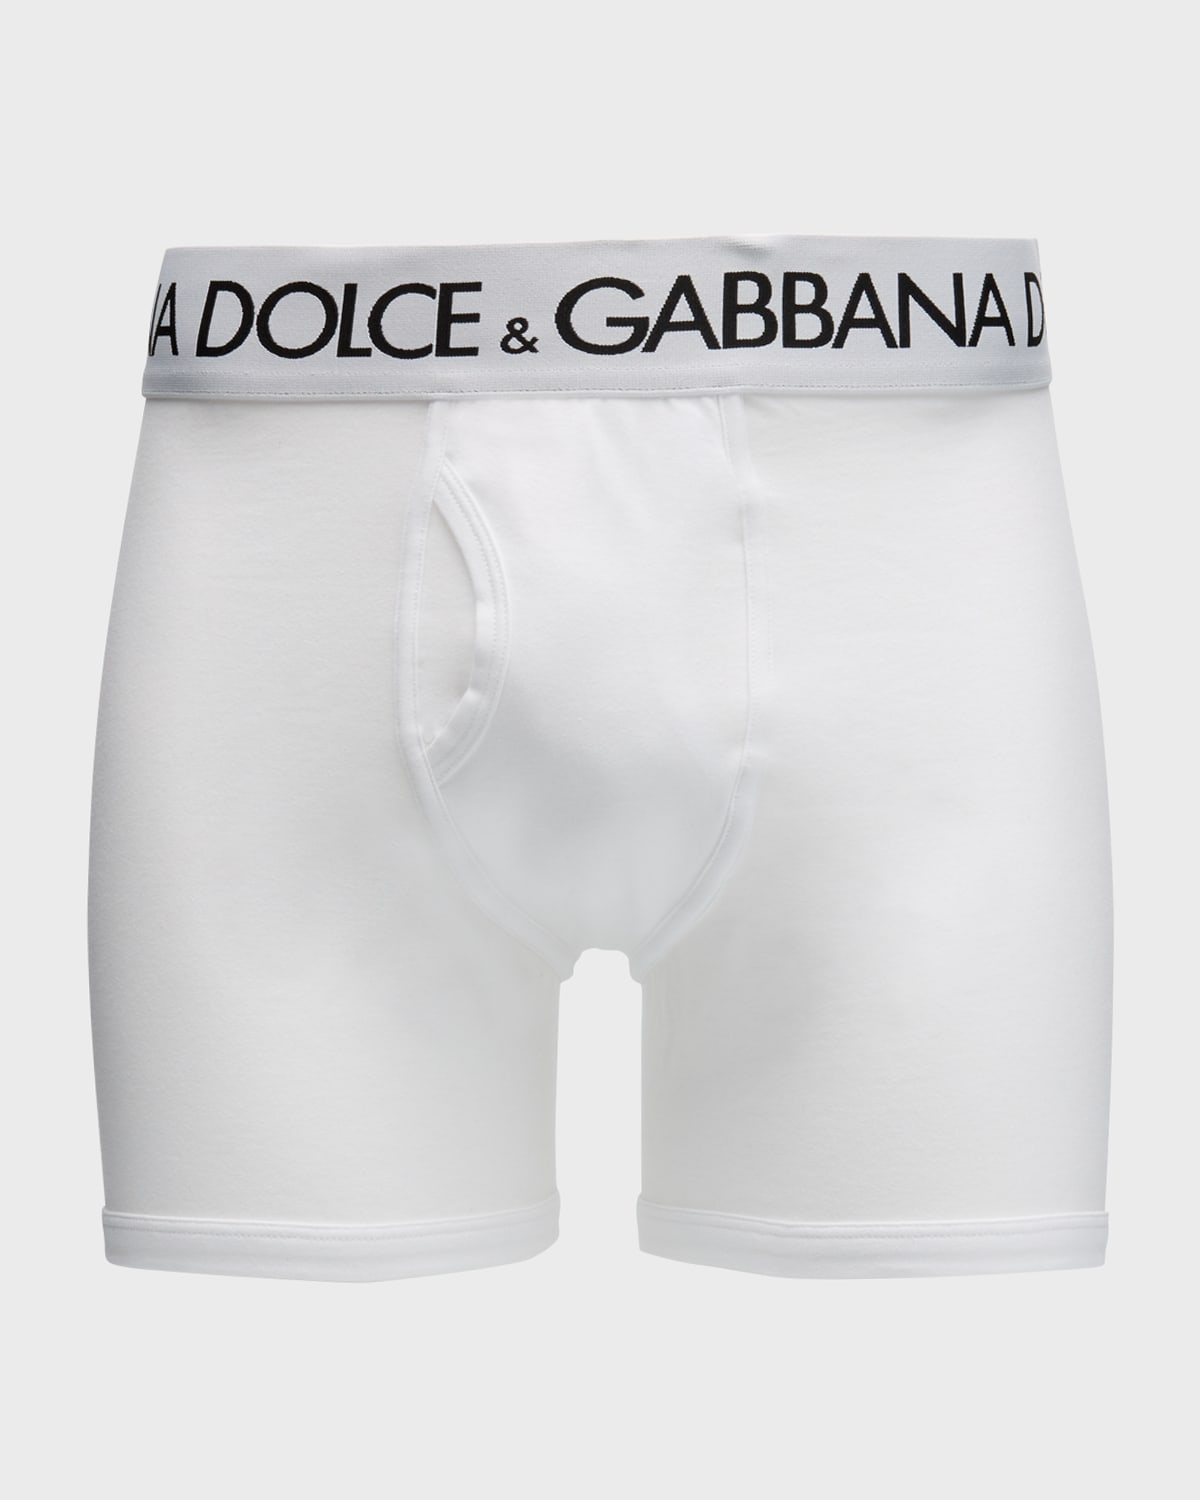 Dolce & Gabbana Men's Waistband-Logo Long Boxer Briefs